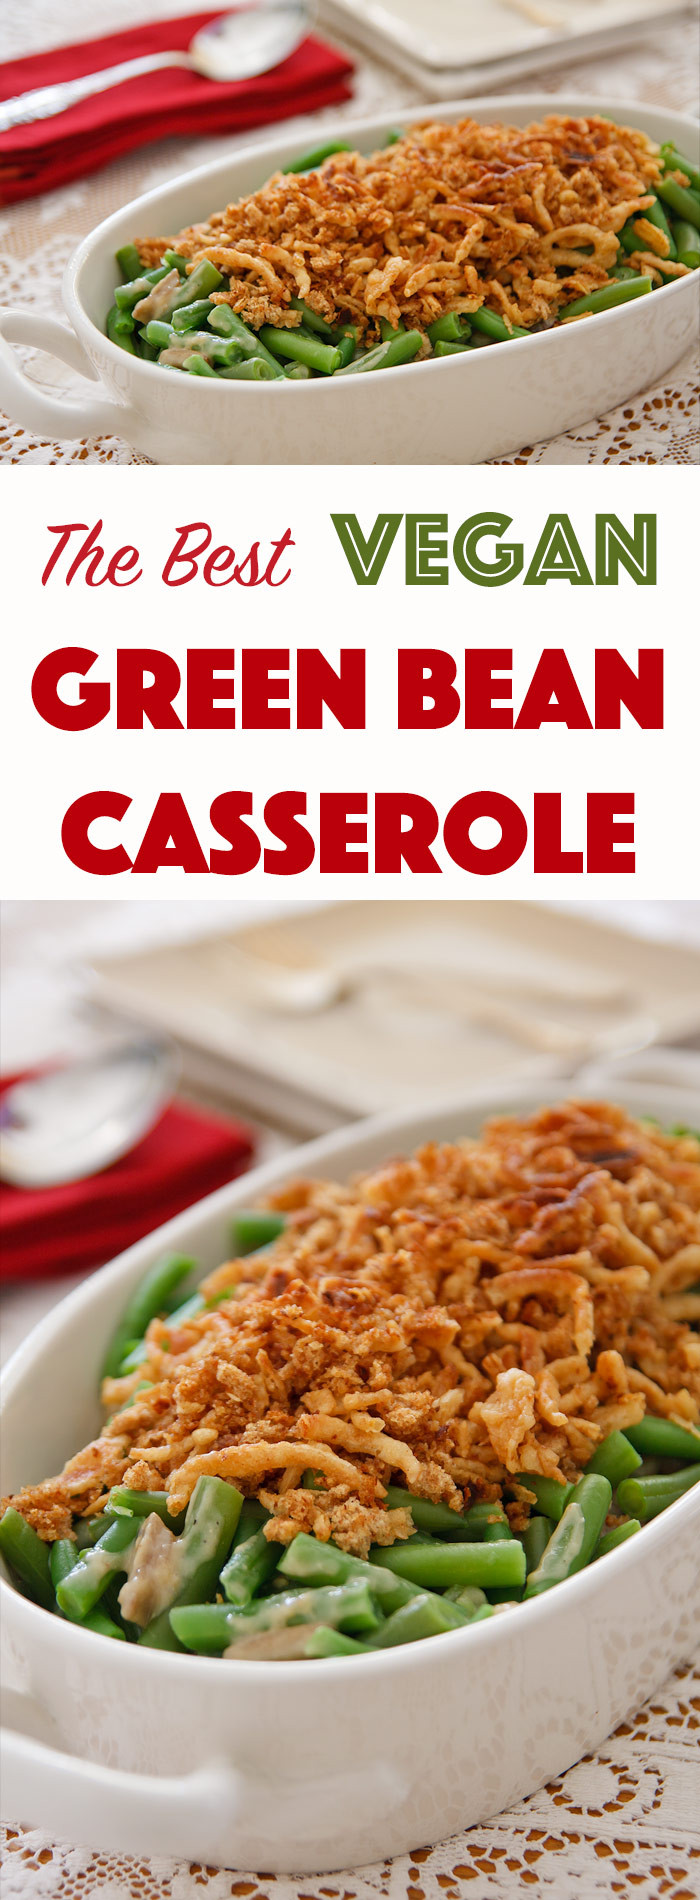 Vegan Green Bean Casserole Recipes
 The Best Vegan Green Bean Casserole